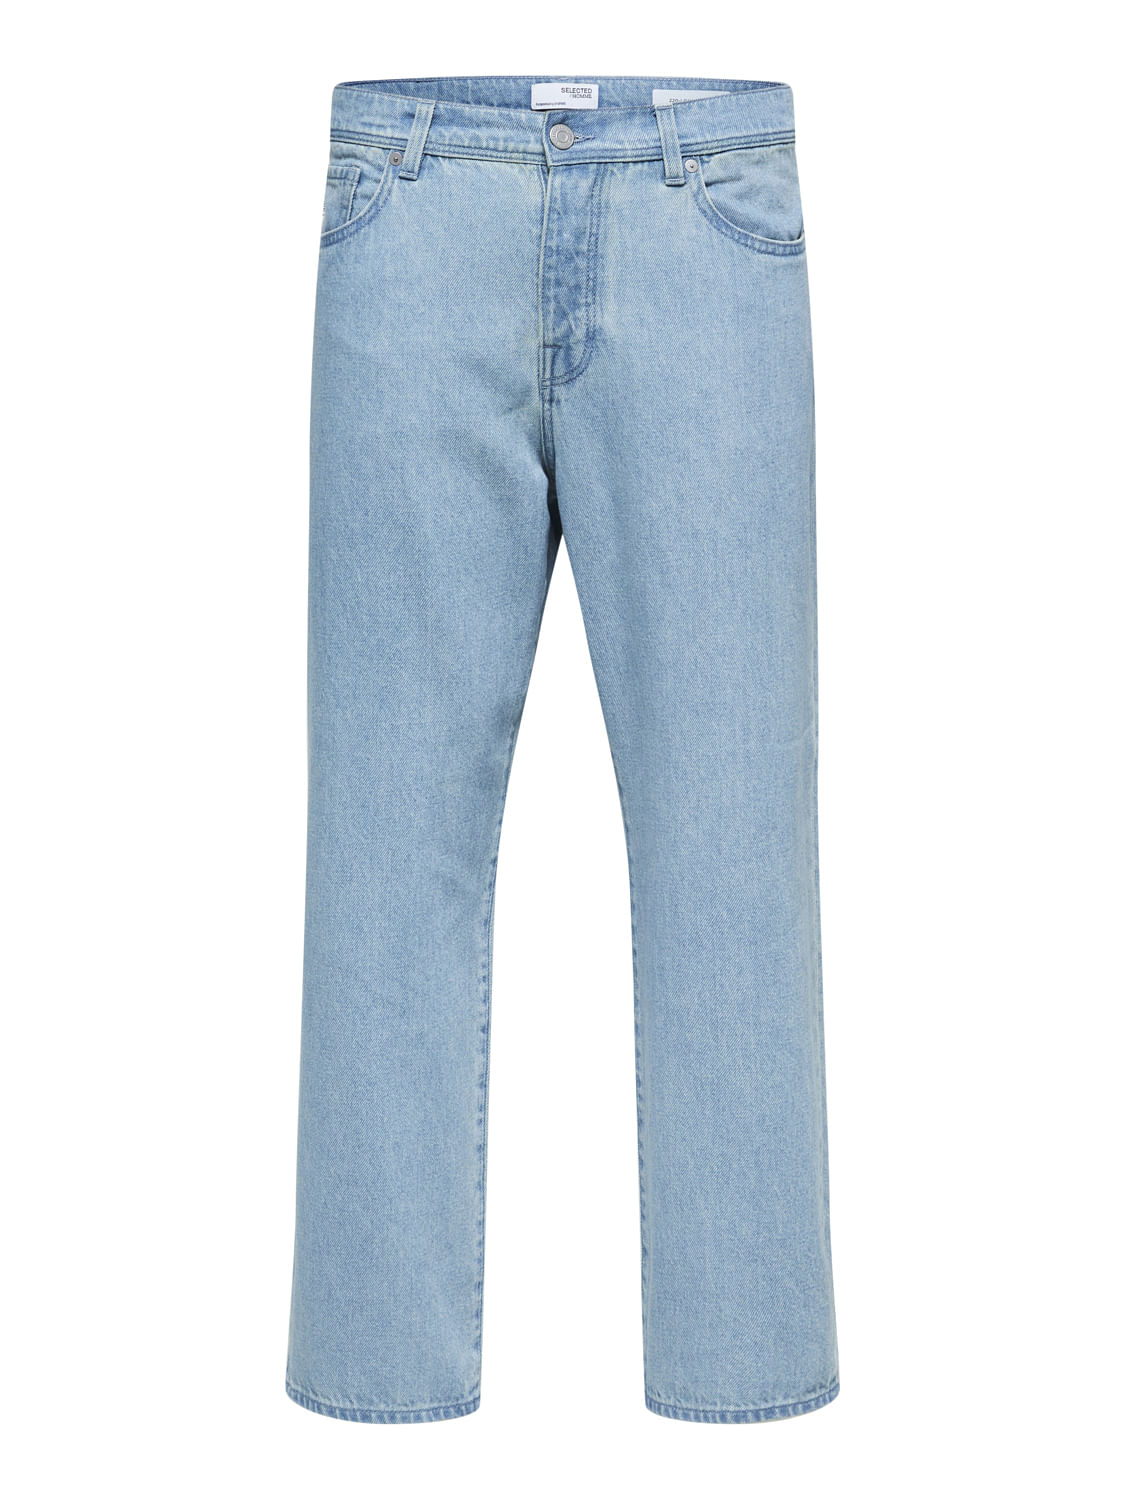 Loose Jeans - Denim blue - Men | H&M IN